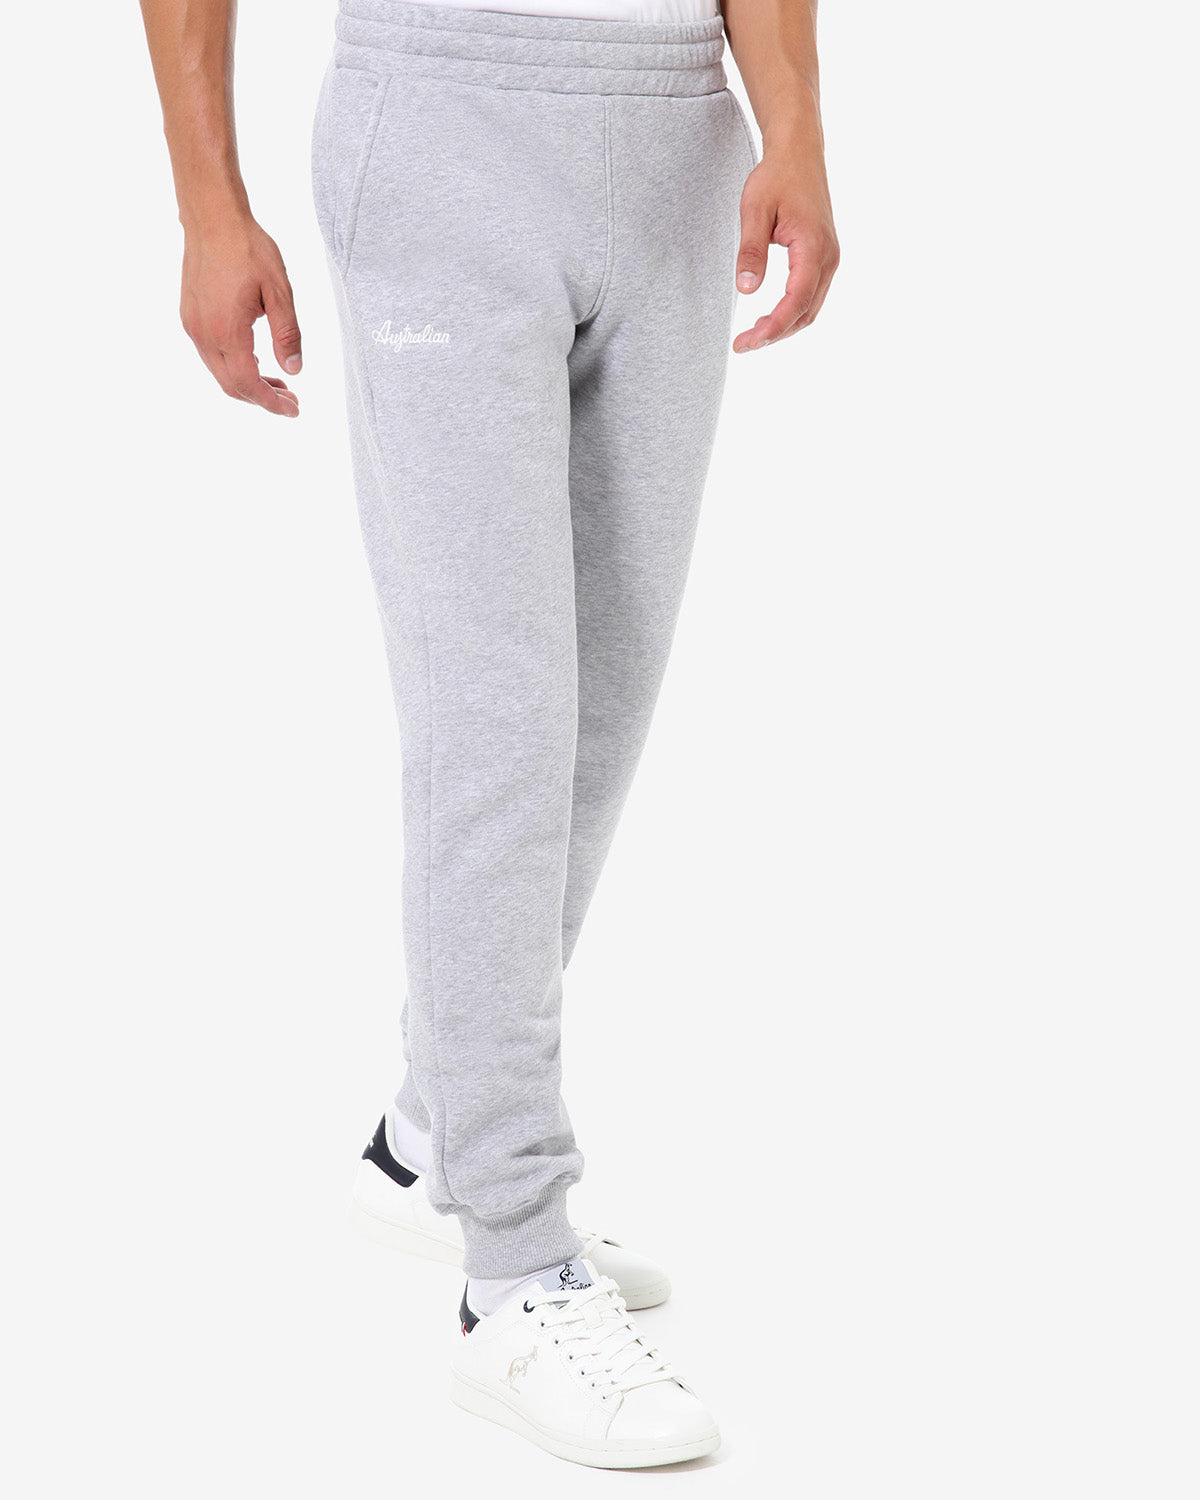 Basic Fleece Pant: Australian Sportswear